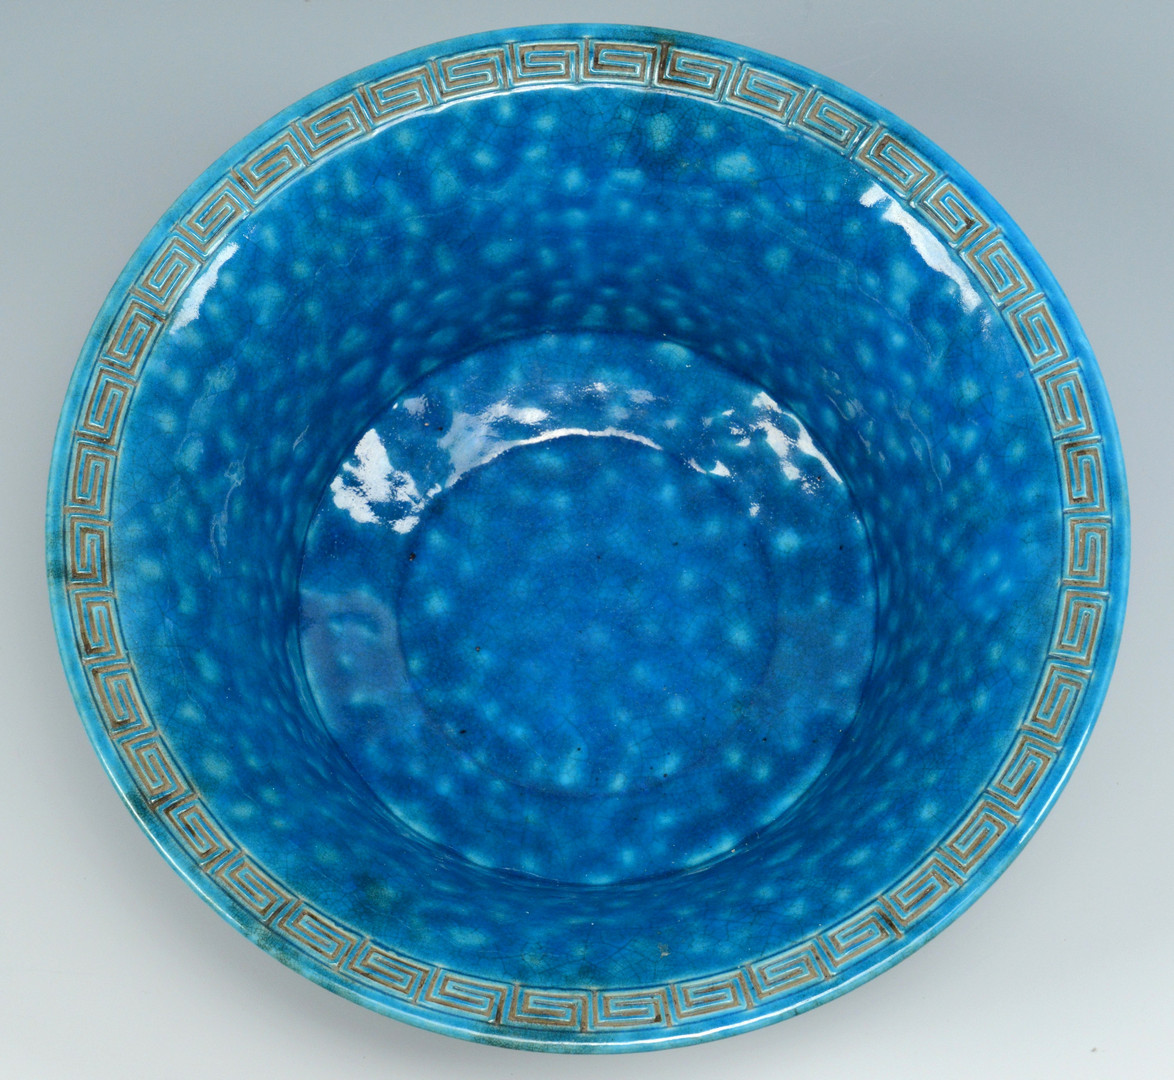 Lot 248: Chinese Blue Glazed Bowl